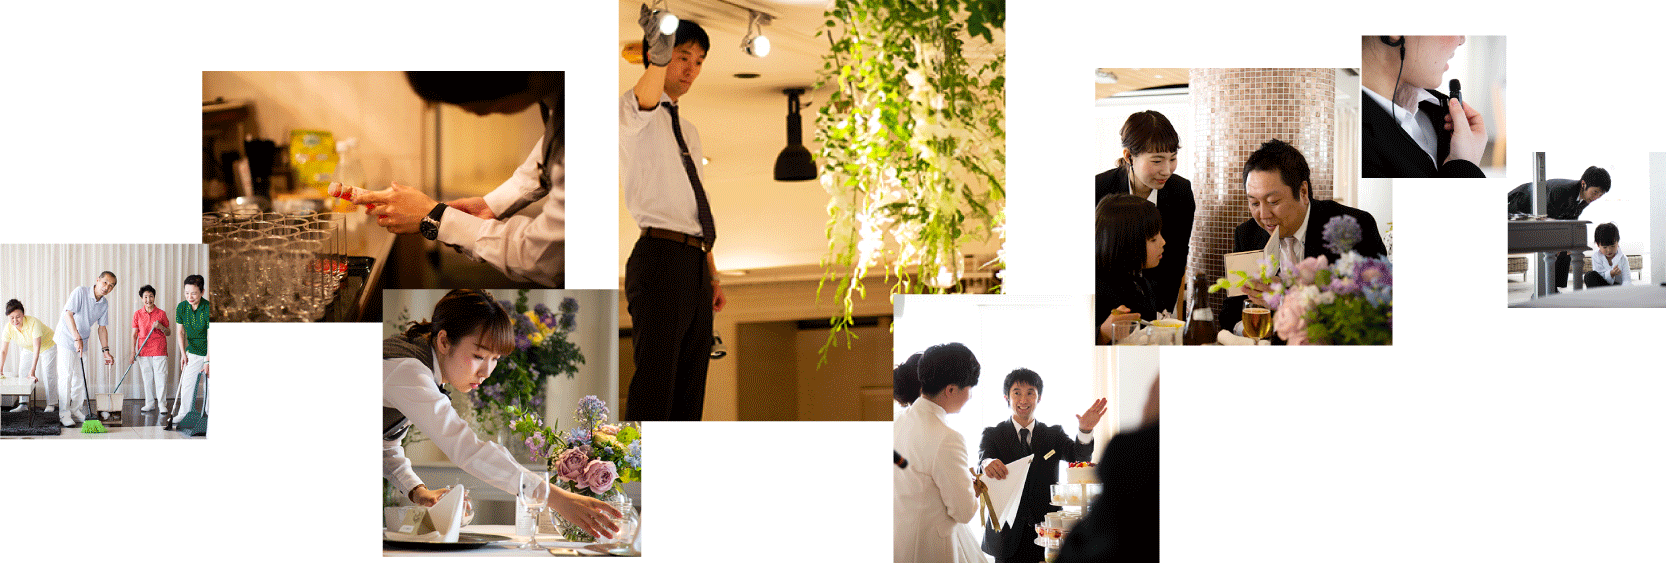 ザ マグリット | 岡山県岡山市の結婚式場・パーティーウェディング・おもてなしウェディング バンケットチーム3